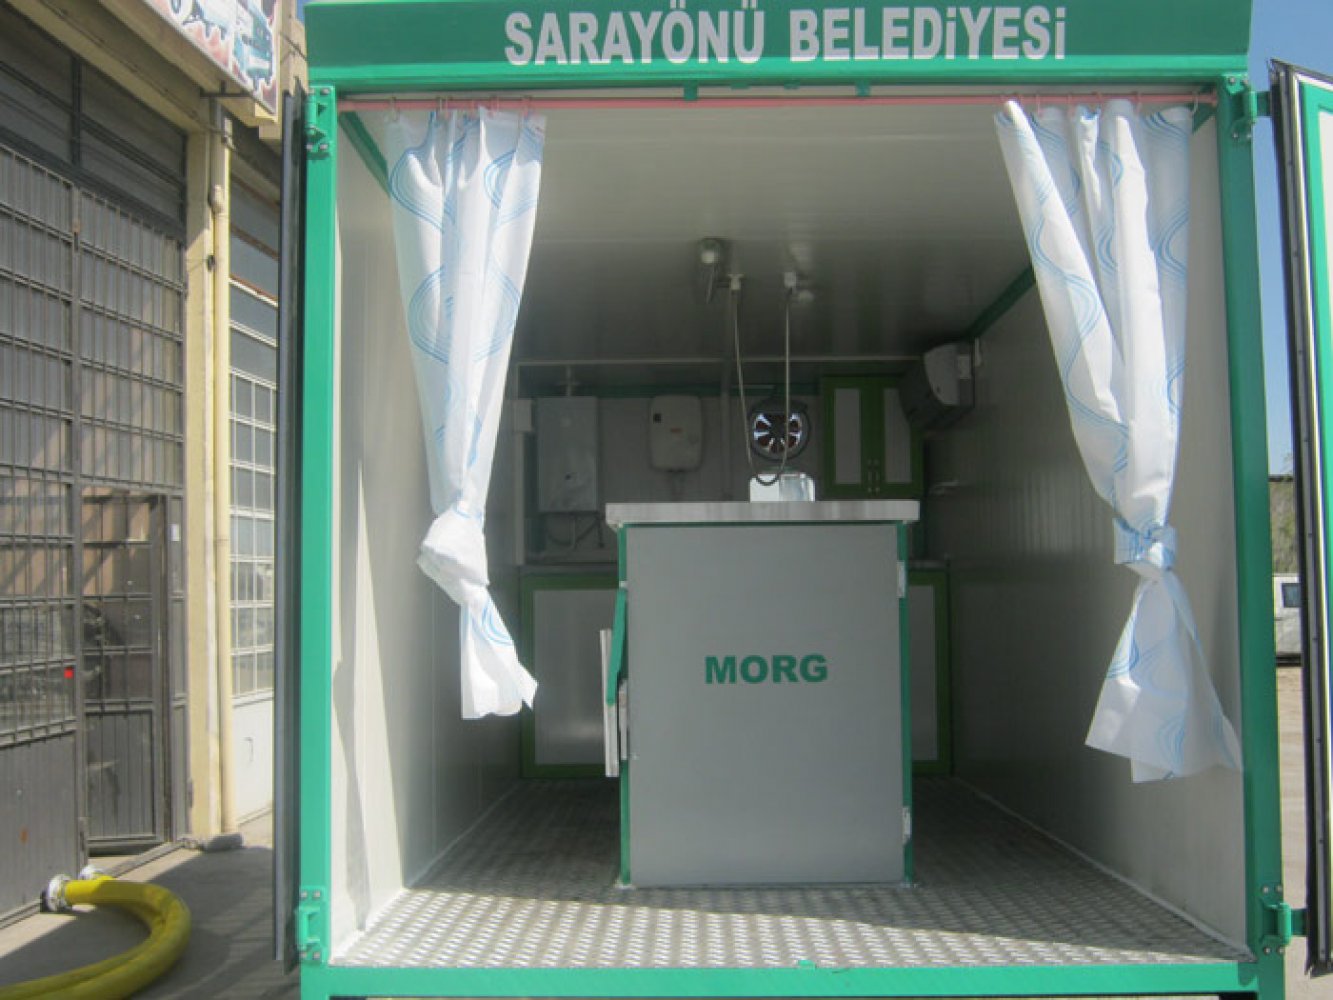 Sarayönü Belediyesi Cenaze Yıkama ve Morg Aracı